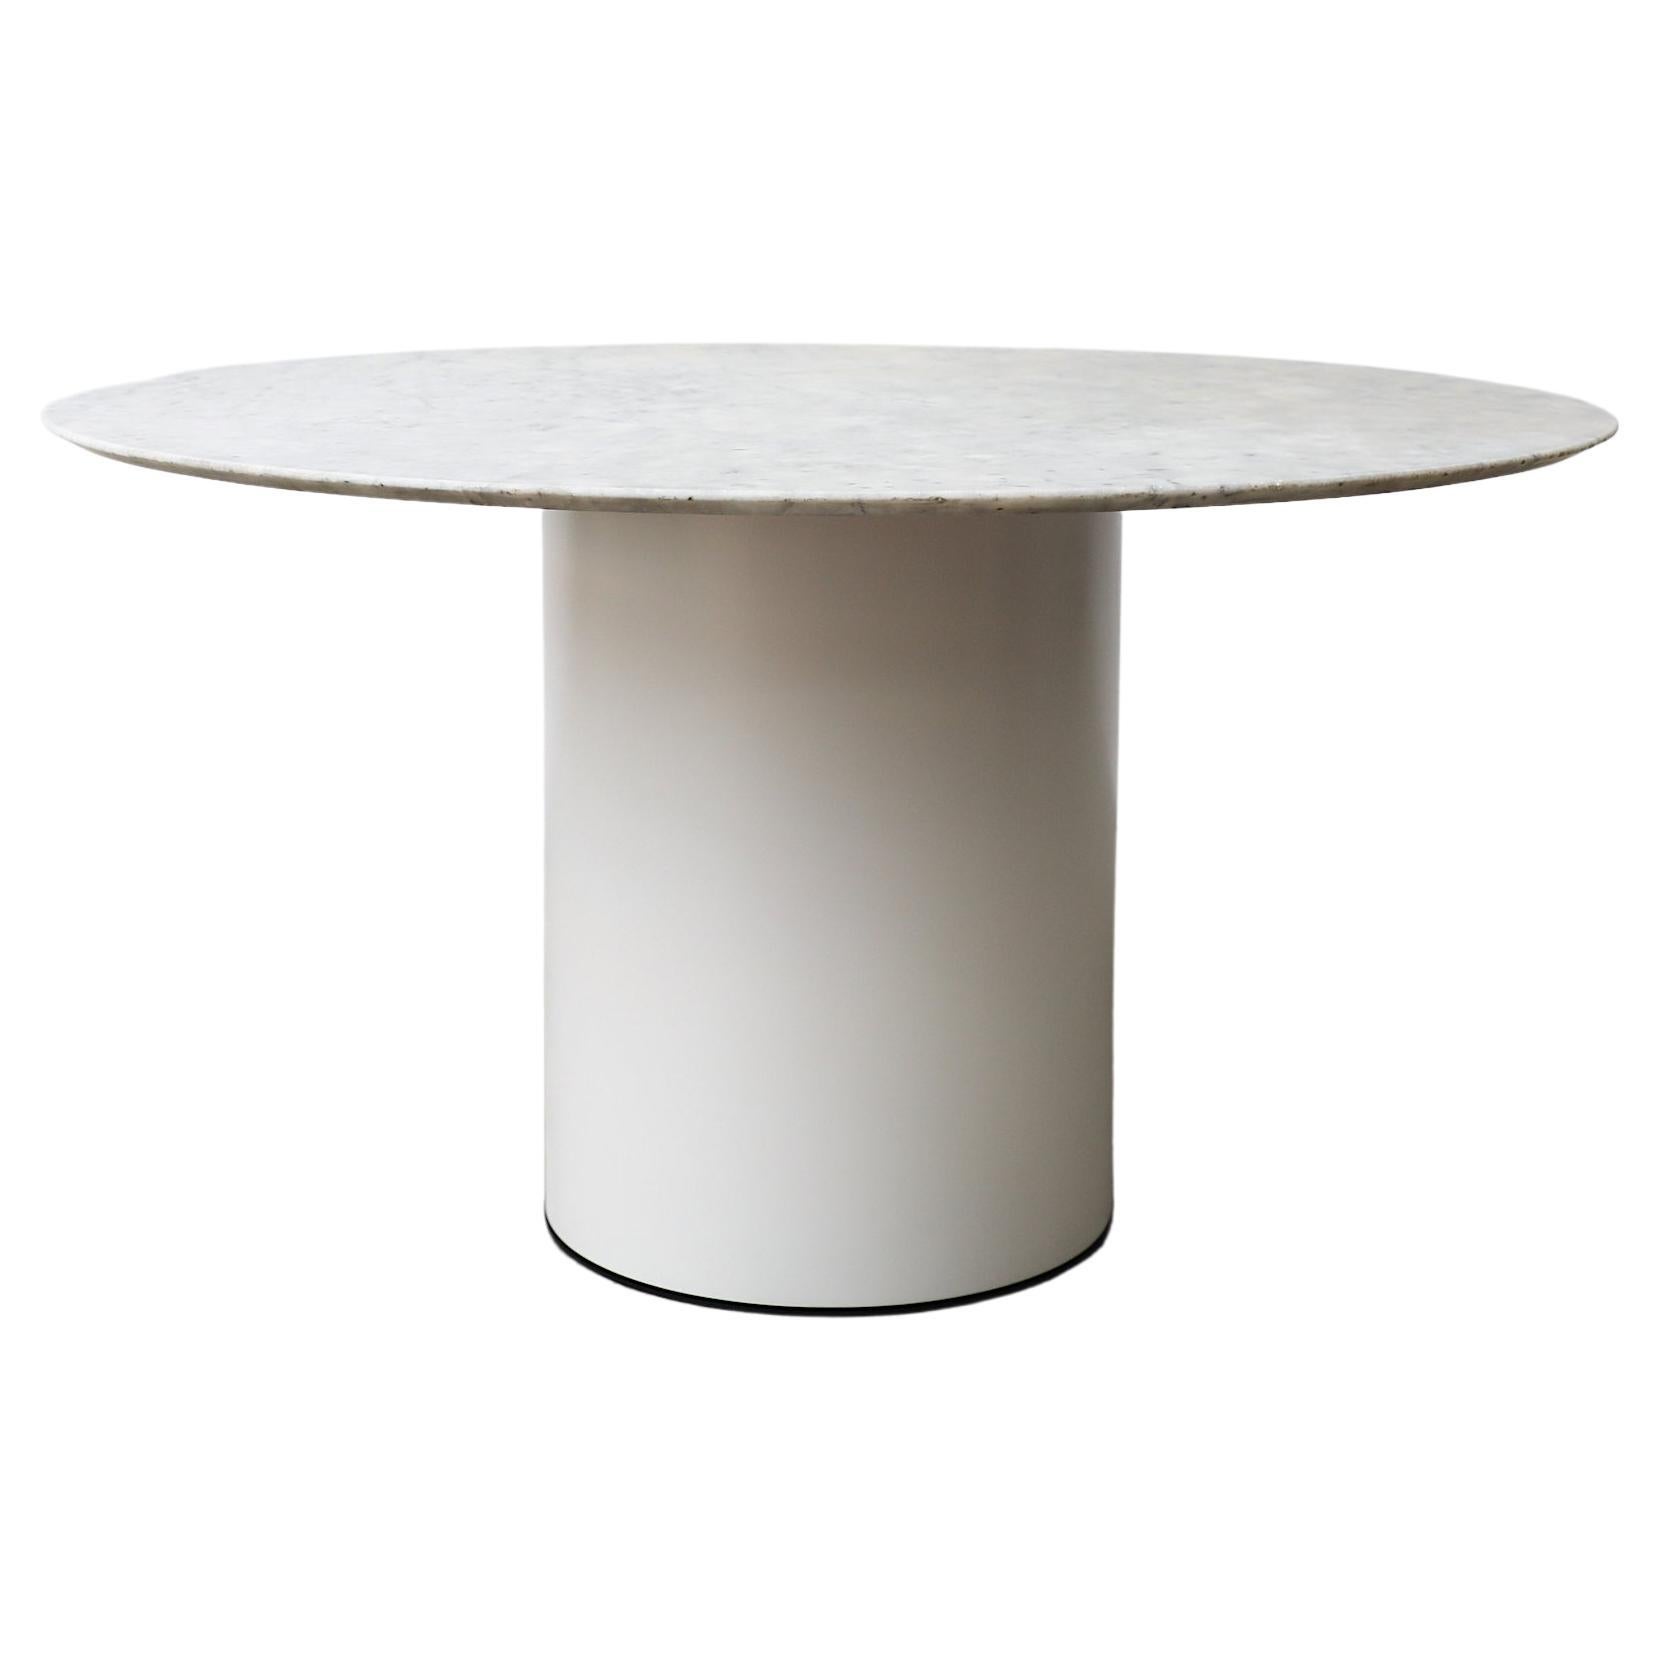 Metaform, runder Tisch aus Carrara-Marmor mit weiß emailliertem Metallsockel